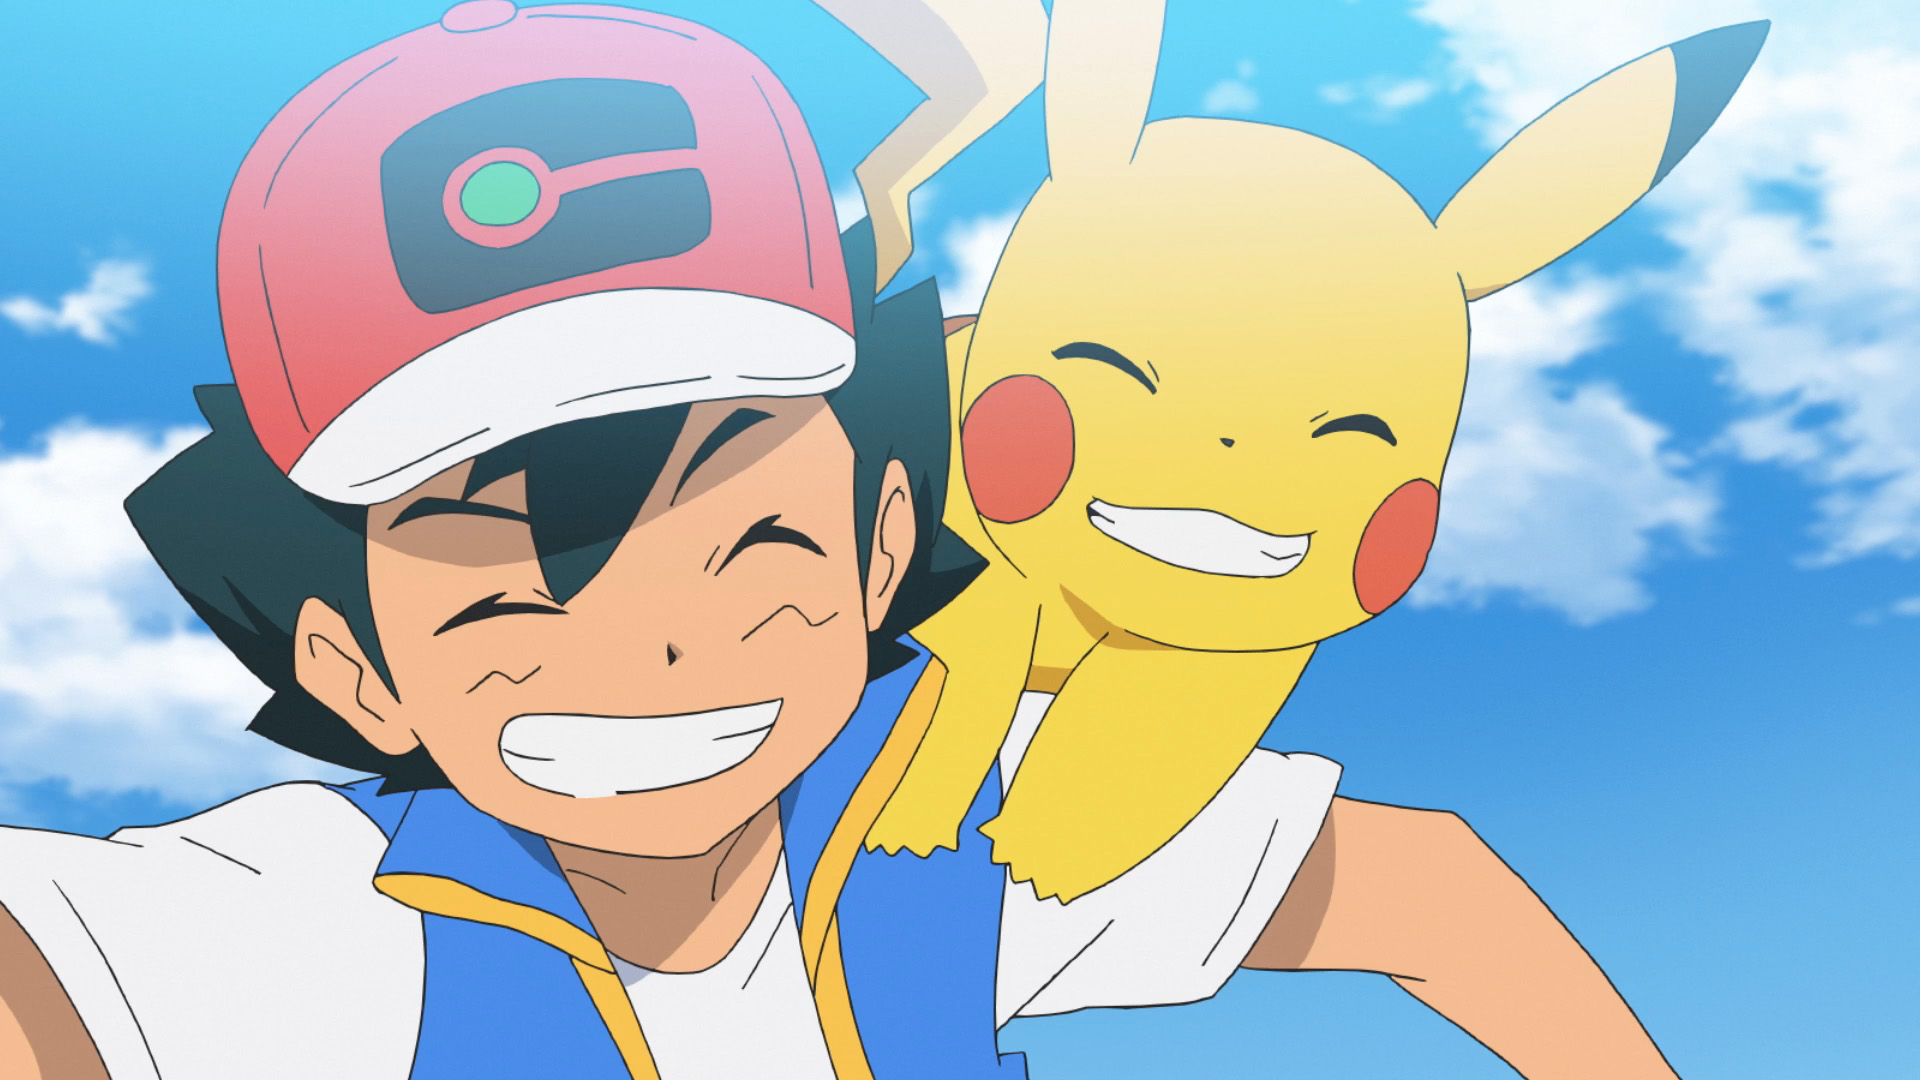 La Serie Pokemon Les Voyages La 23eme Saison De L Anime Pokemon Arrive Bientot Sur Nos Ecrans Eternia